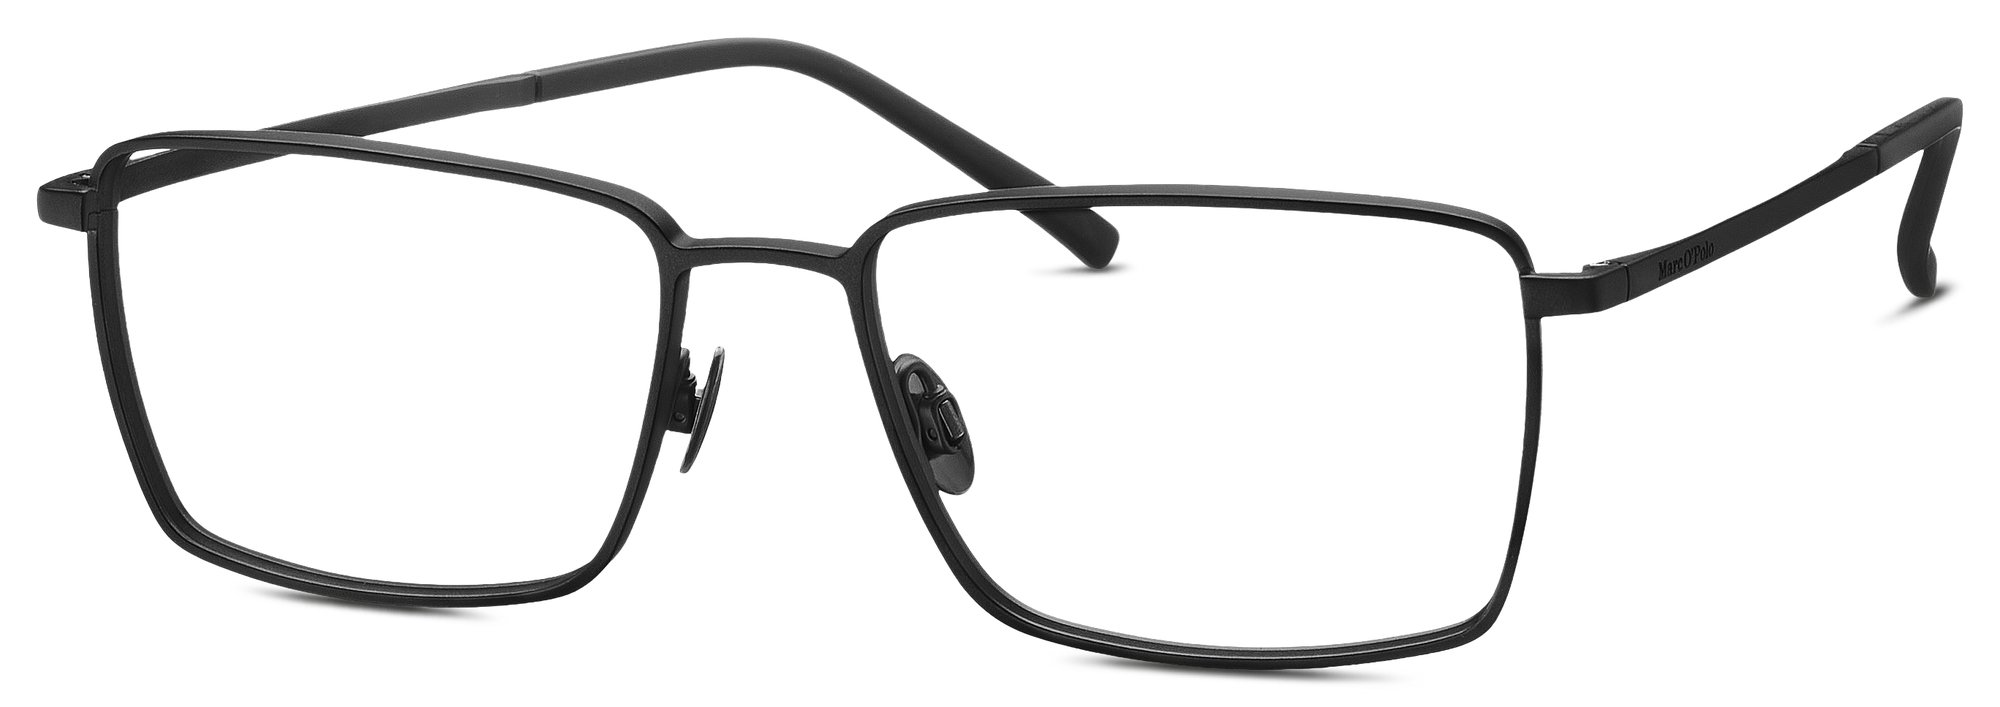 Das Bild zeigt die Korrektionsbrille  500042_10 5517 von der Marke Marc  ó Polo in der Farbe  schwarz.